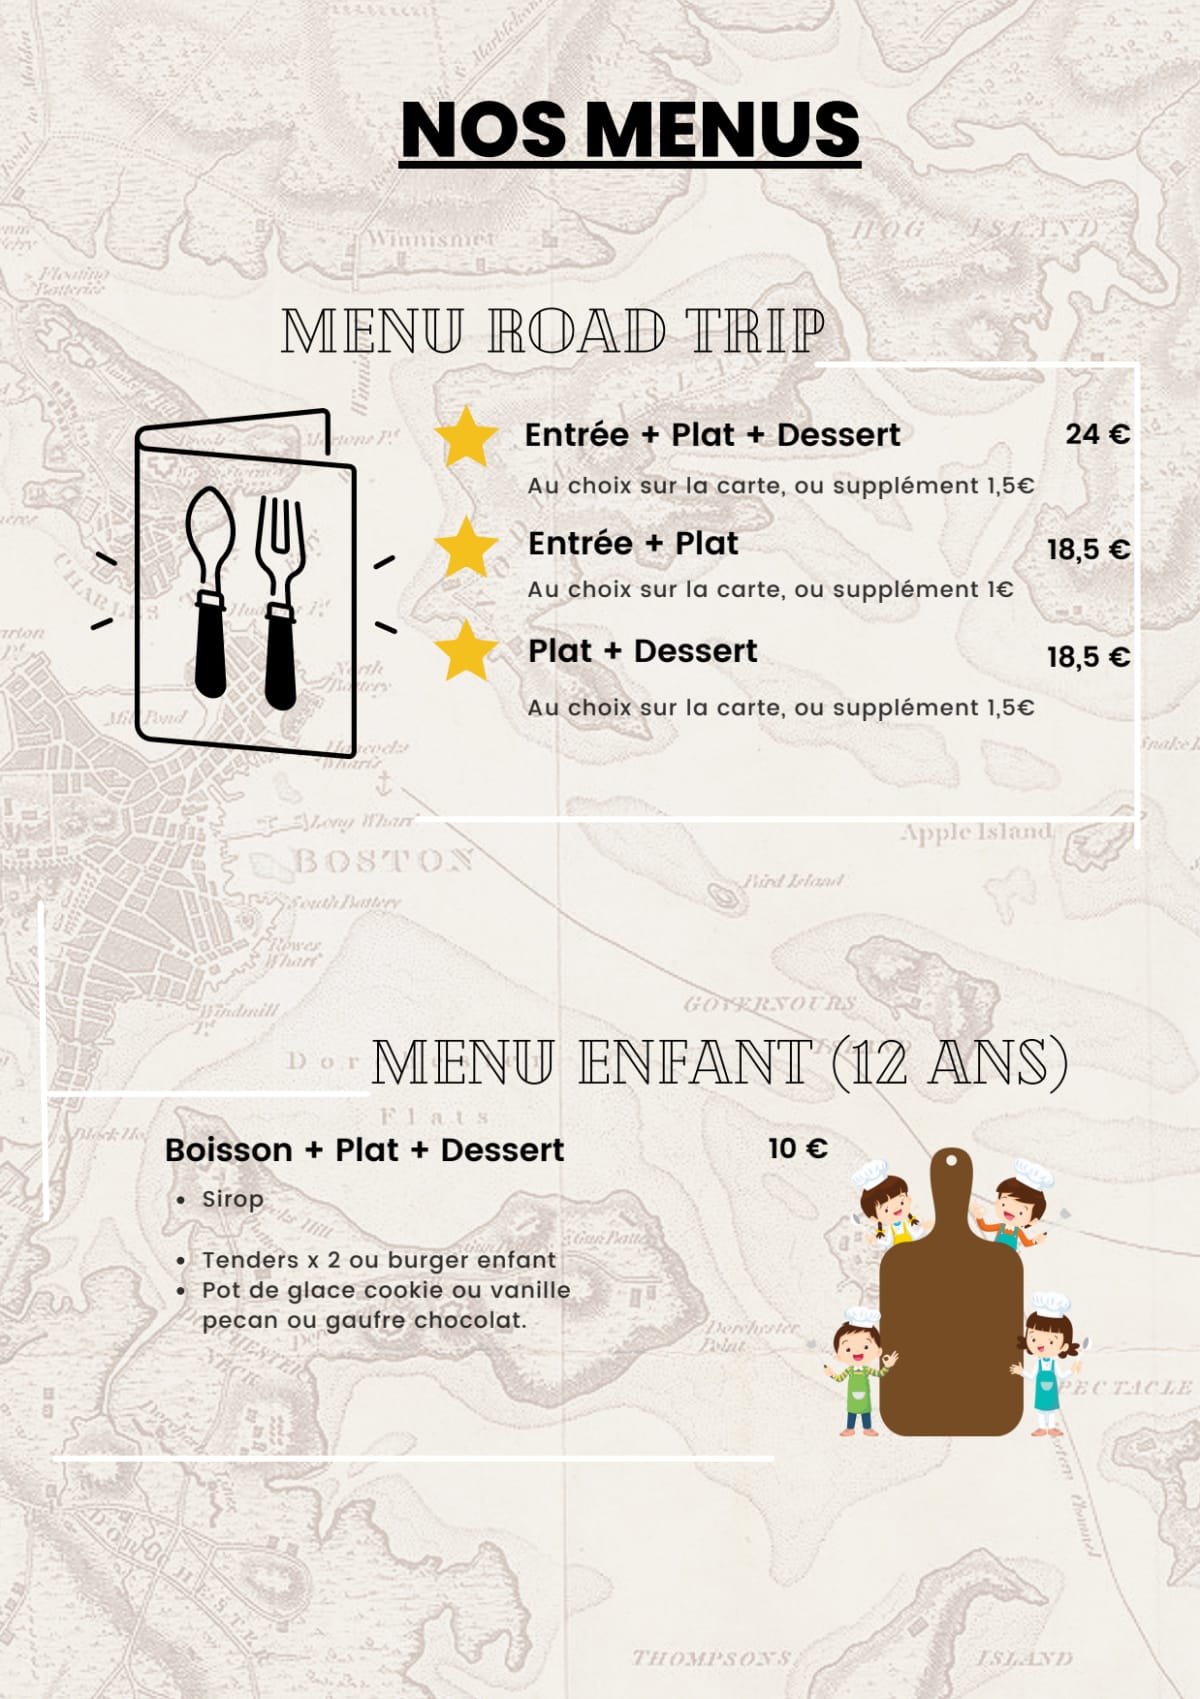 The Road Trip menu